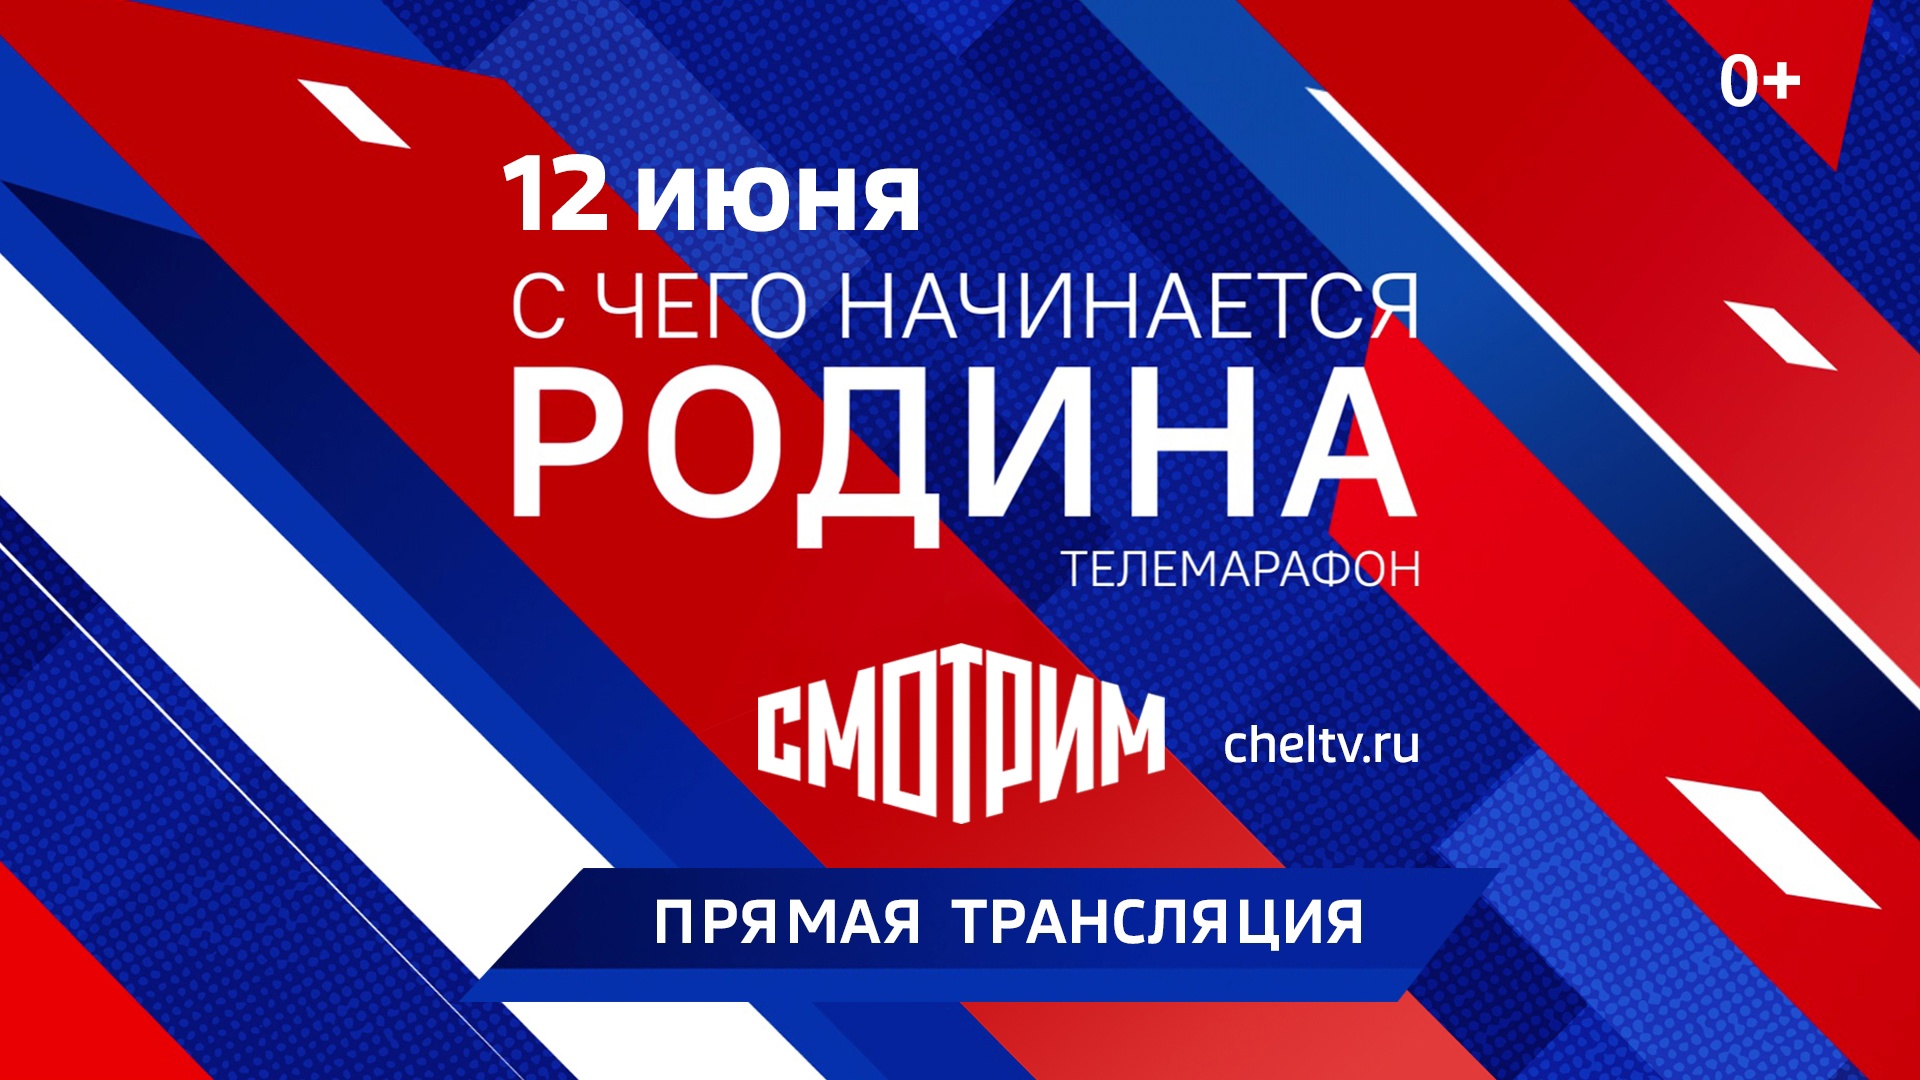 В День России пройдет 12-часовой песенный марафон "С чего начинается Родина"